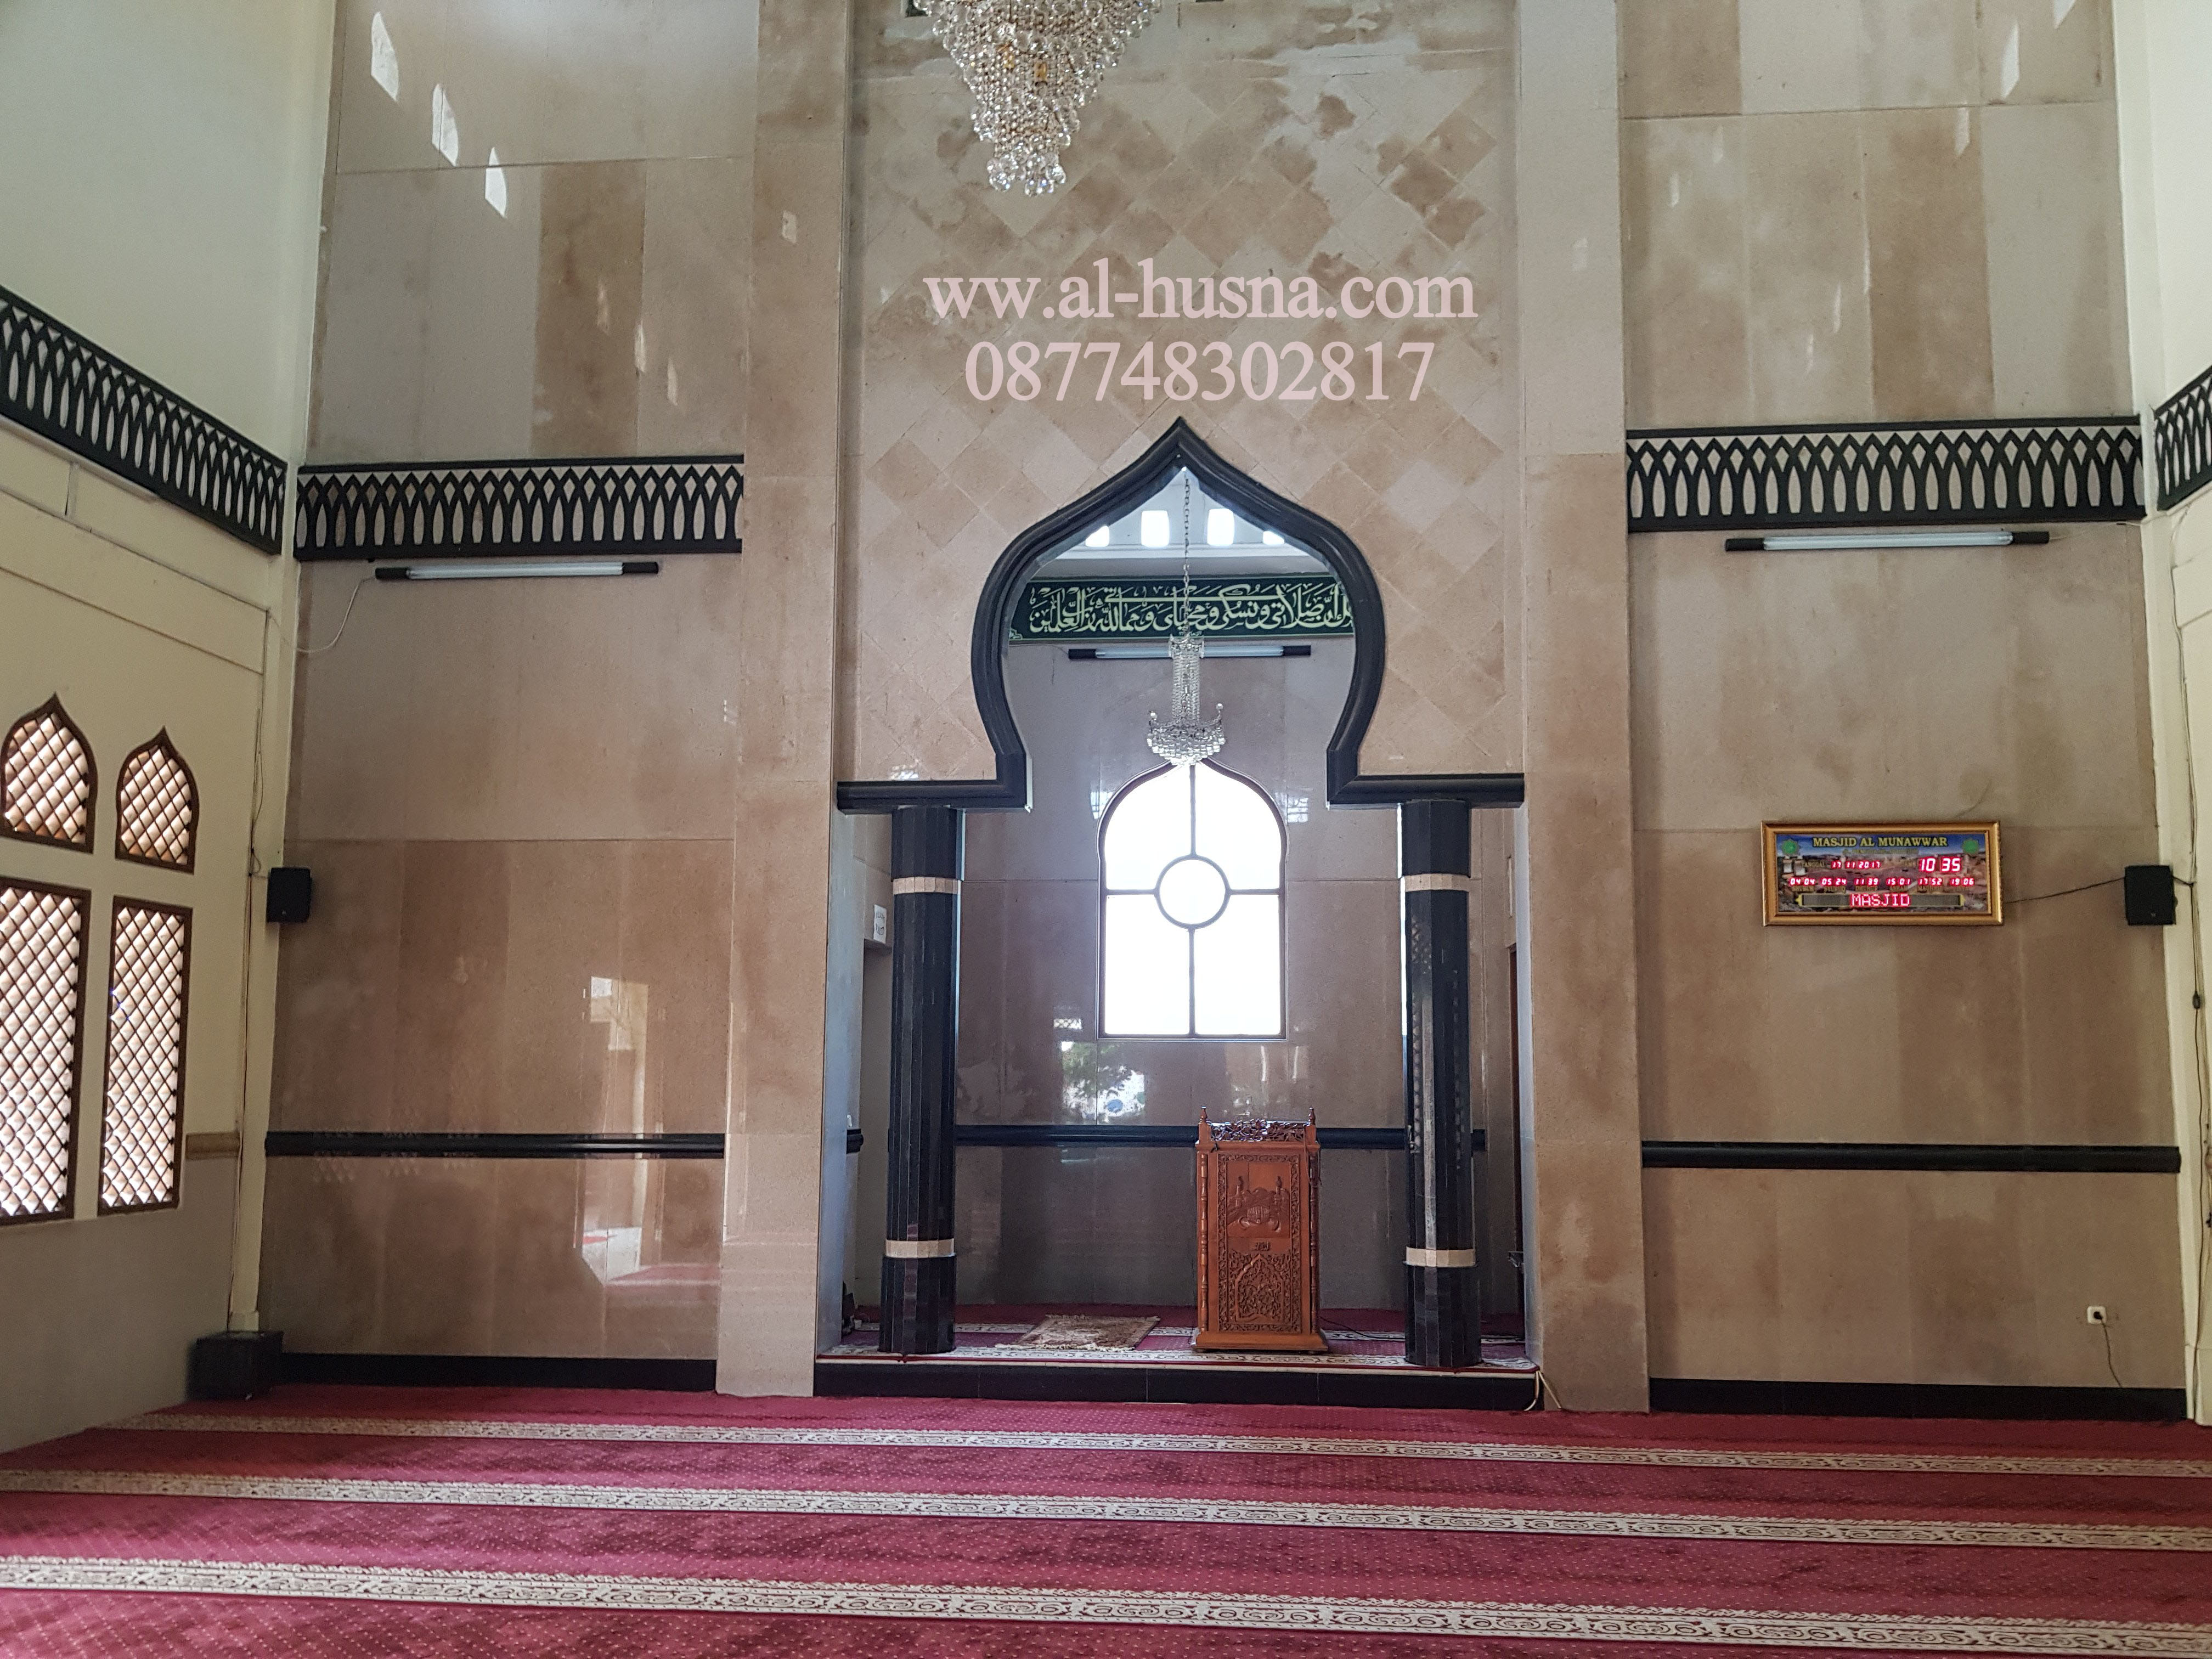 Daftar Harga Karpet Masjid Di Sukamukti Bojongmangu